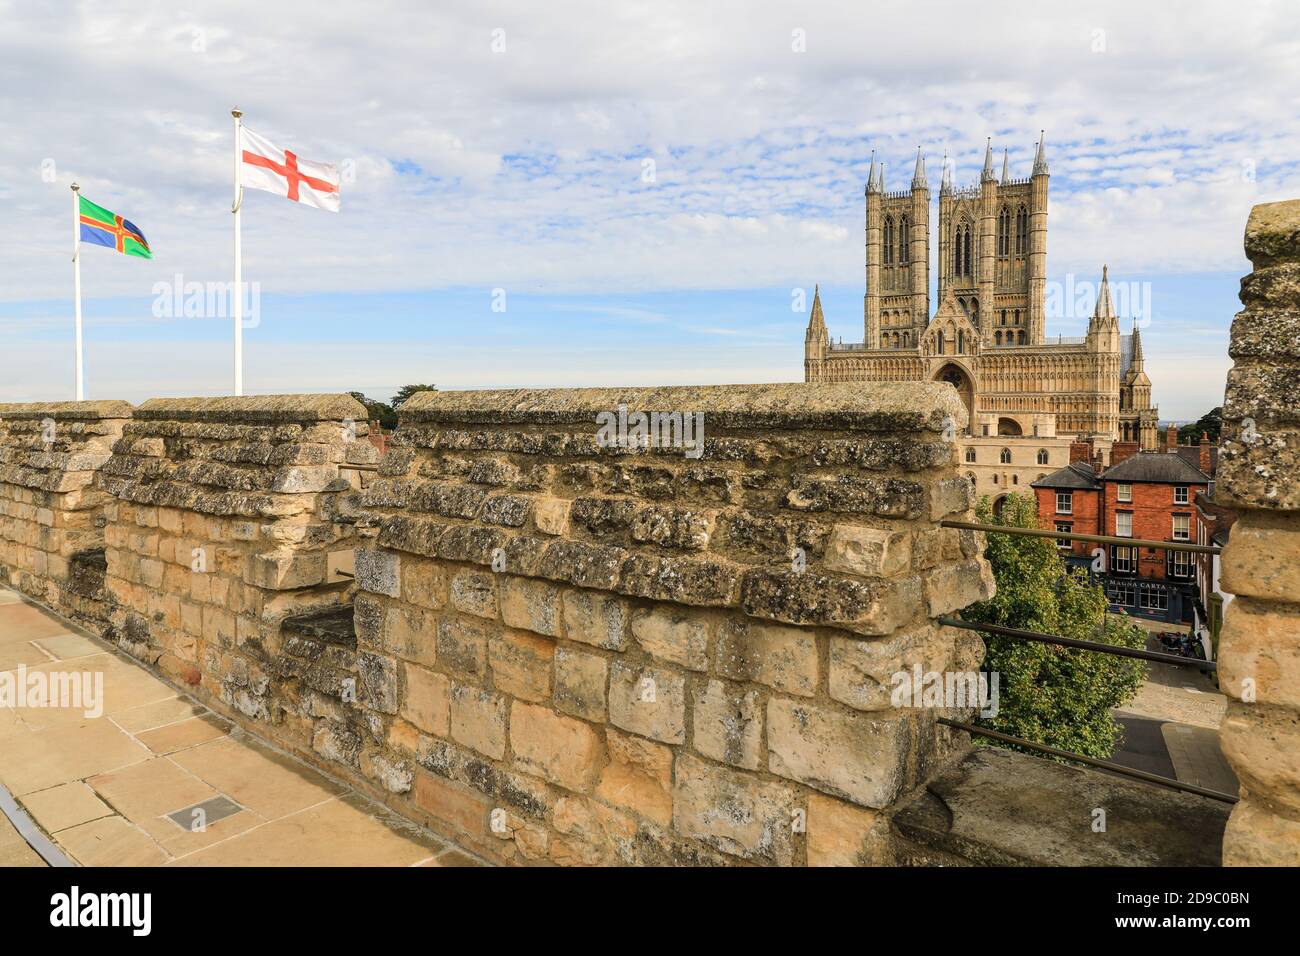 Banderas volando sobre la pasarela en las murallas del Castillo de Lincoln con la Catedral de Lincoln en el fondo, la ciudad de Lincoln, Lincolnshire, Inglaterra, Reino Unido Foto de stock